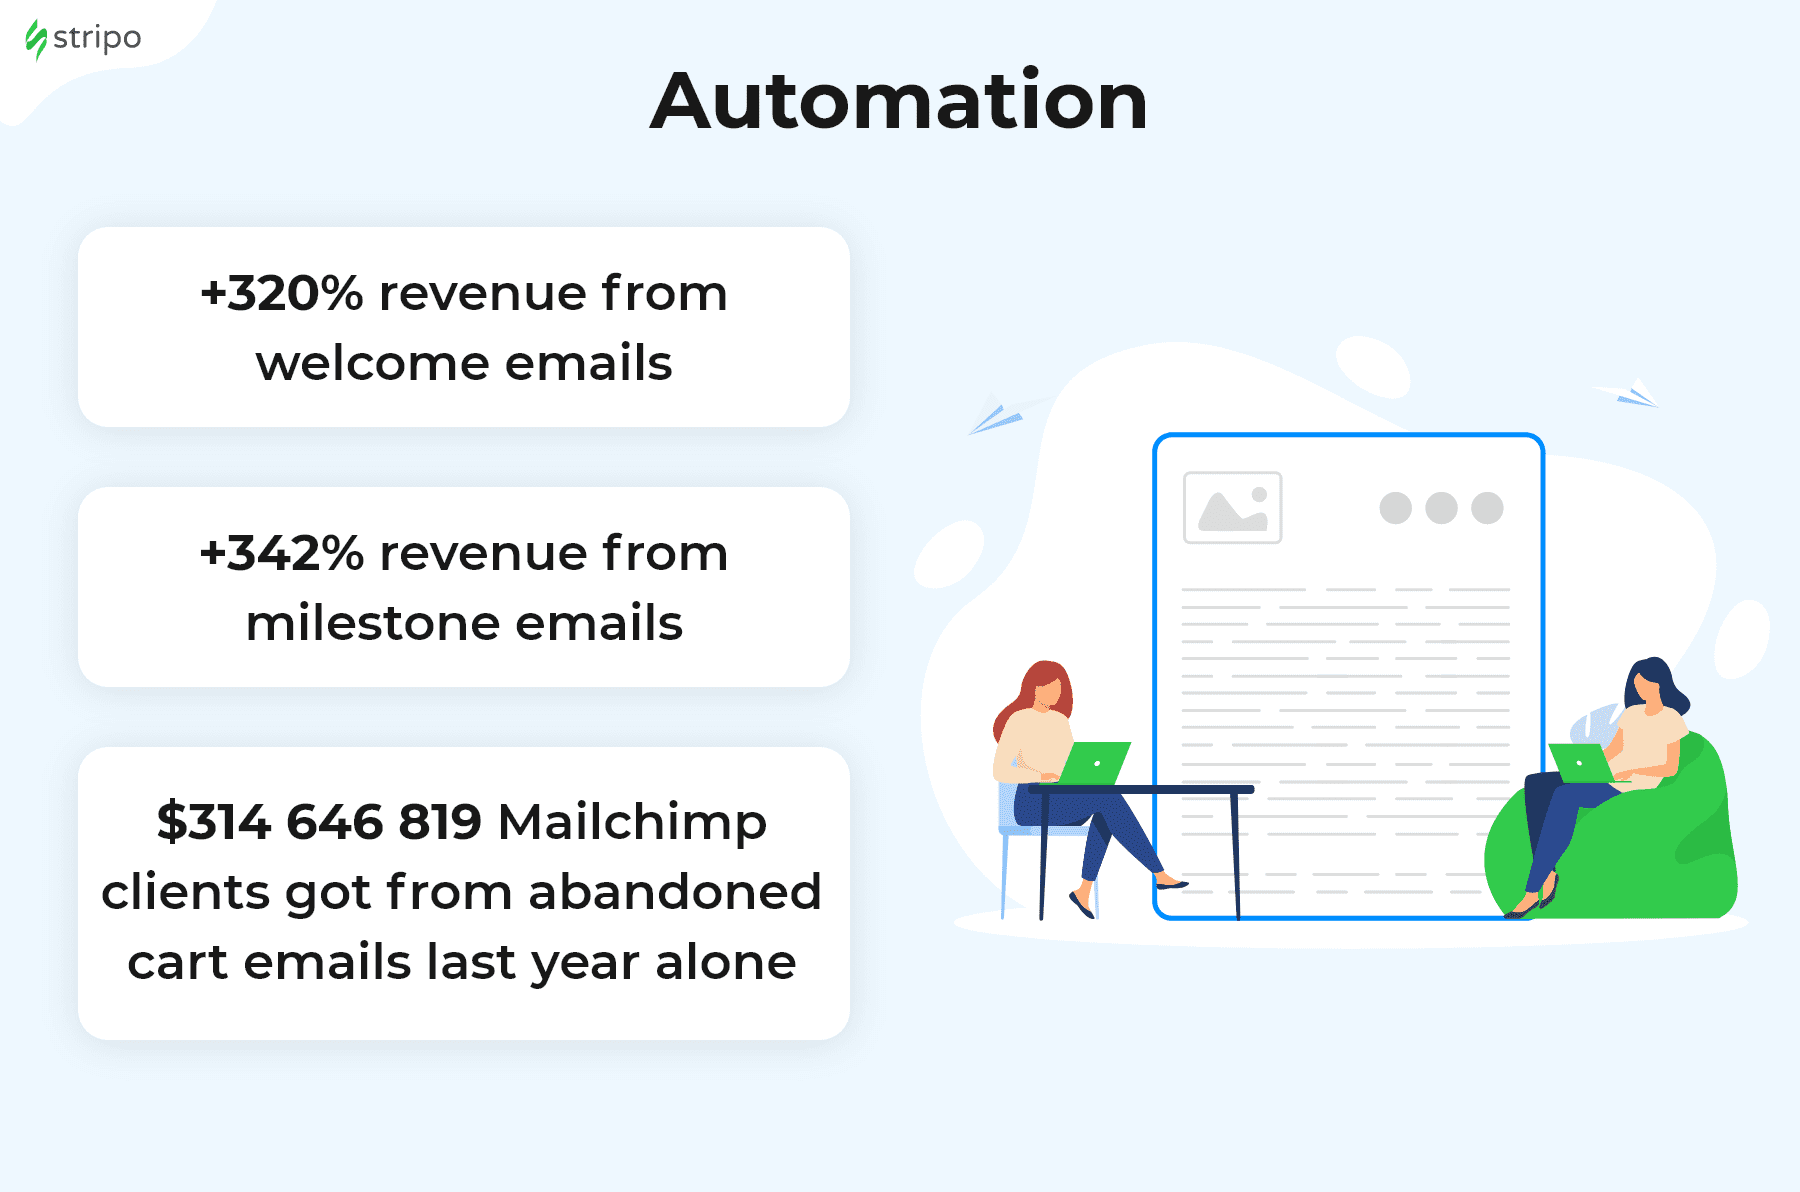 Vorteile der E-Mail-Marketing-Automatisierung